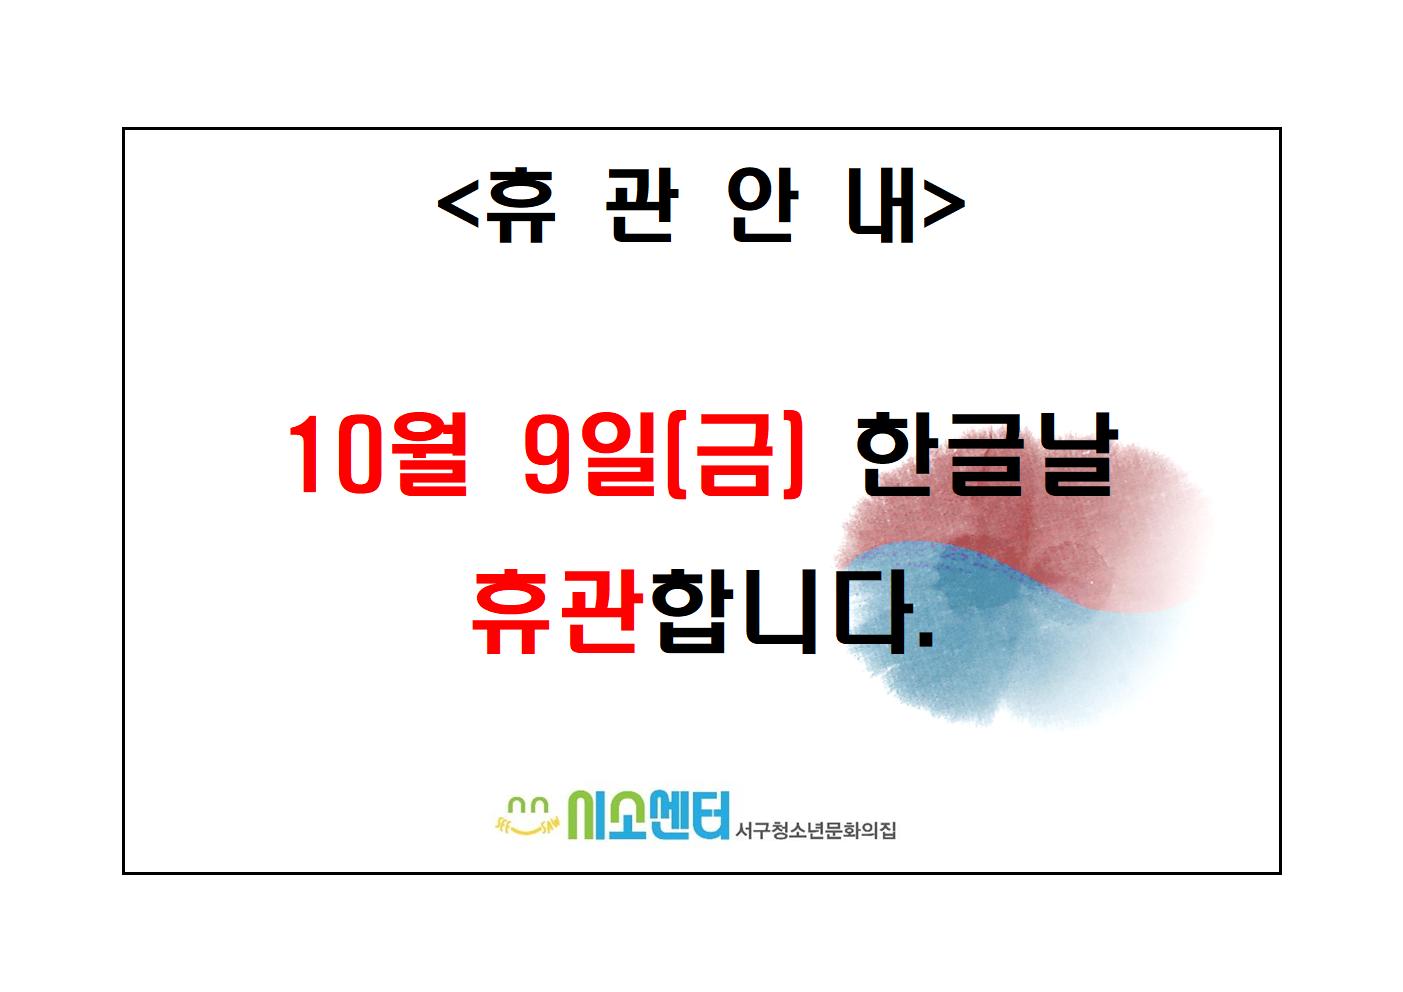 2020-10-09_한글날 휴관 안내문_김재원.jpg